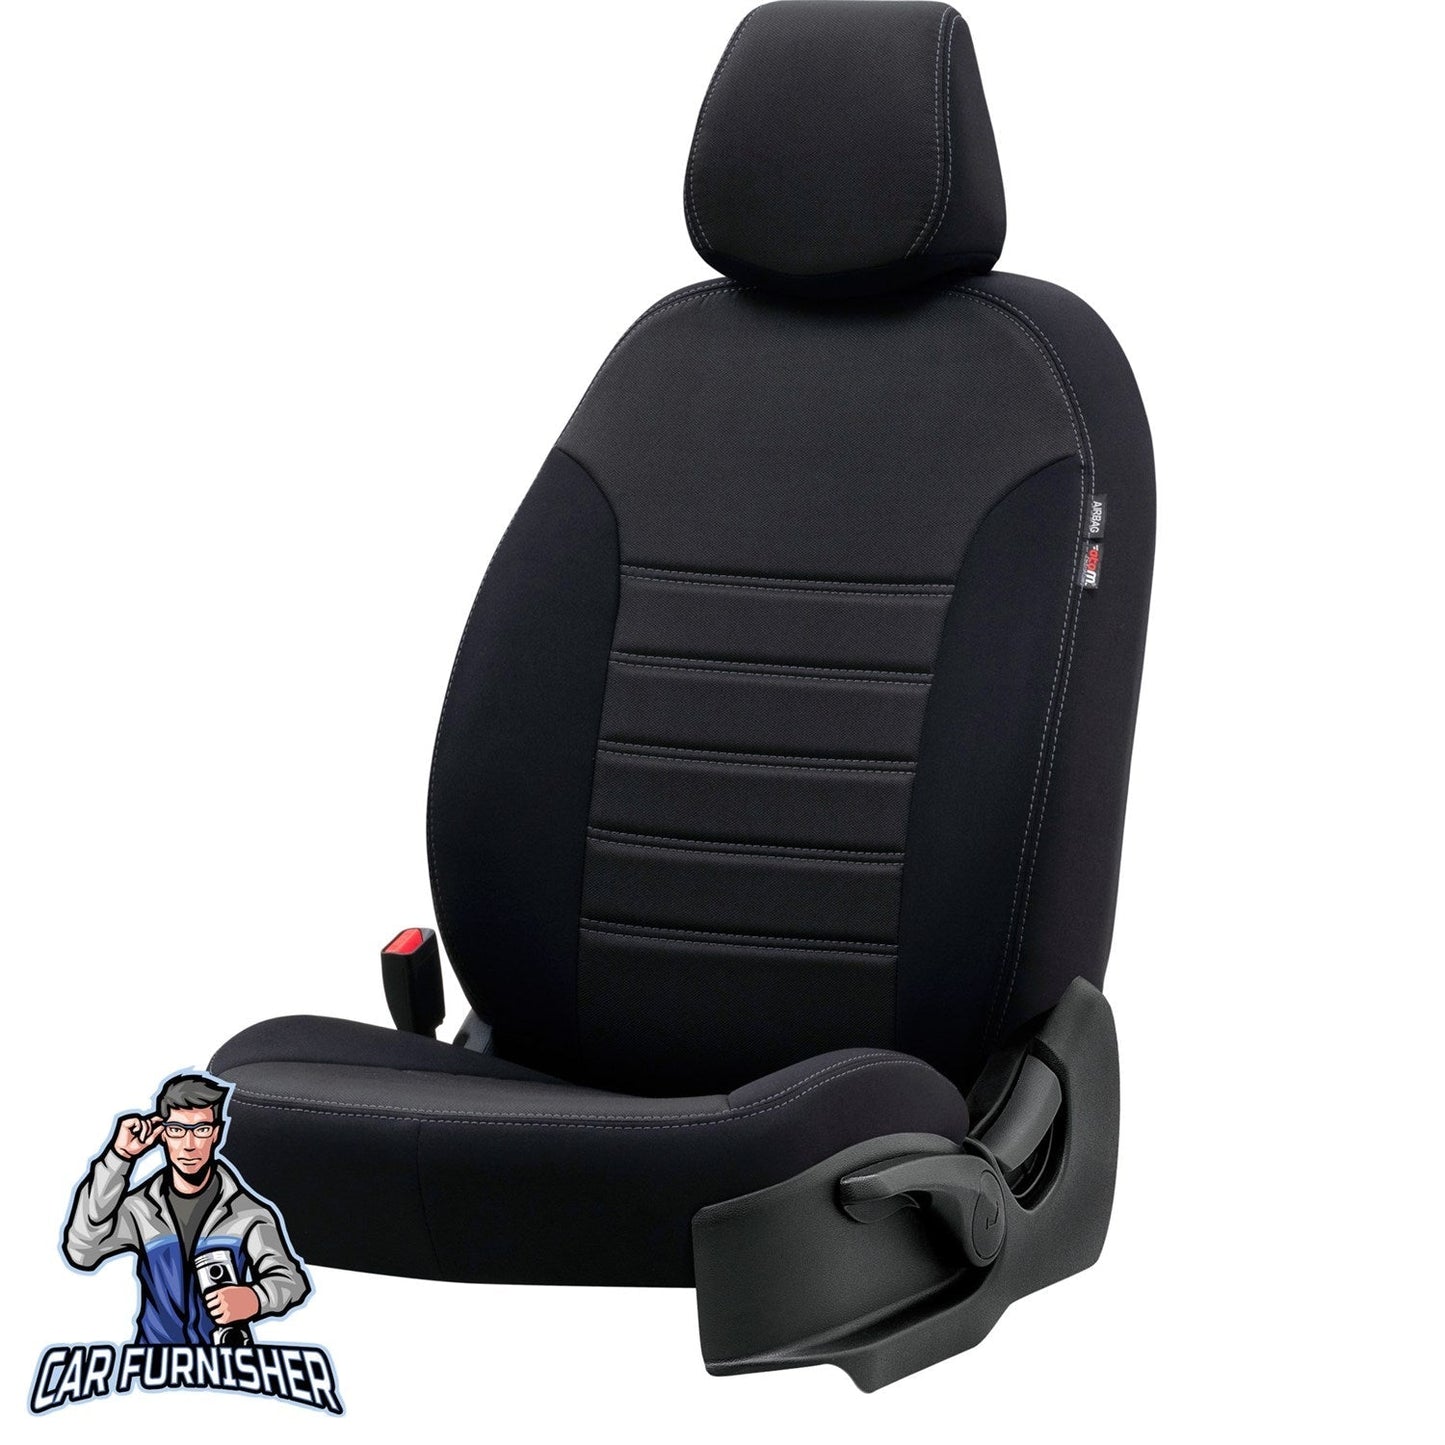 Peugeot Partner Tepee Seat Covers Original Jacquard Design Black Jacquard Fabric